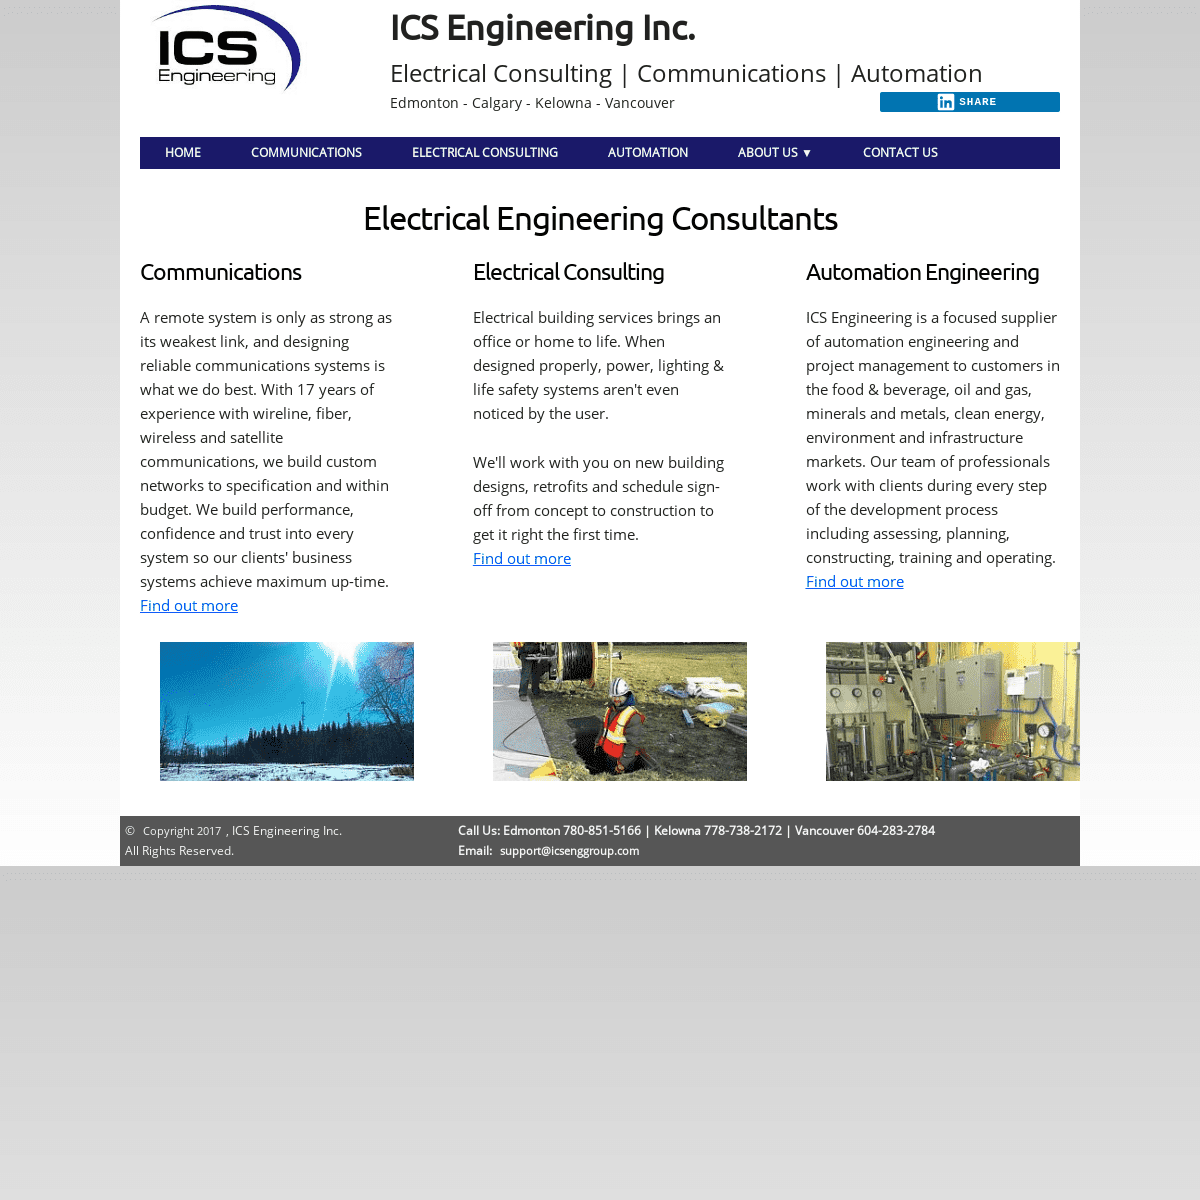 A complete backup of icsenggroup.com